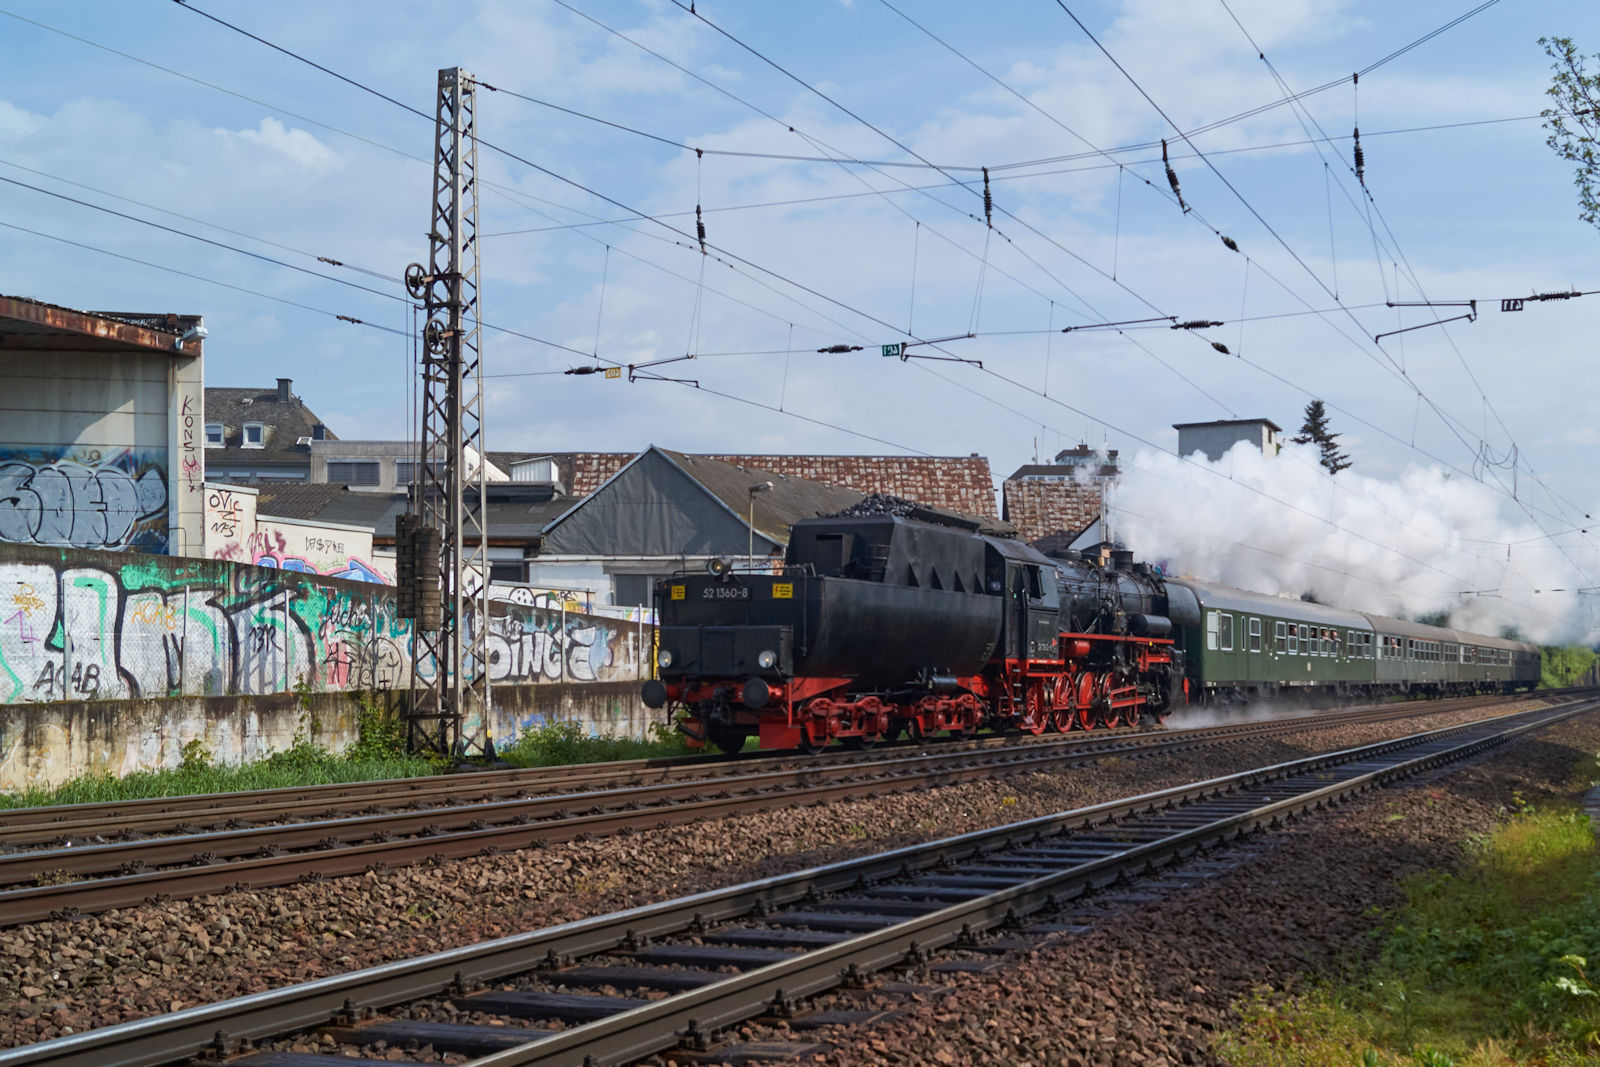 Ende April 2018 fand in Trier und Umgebung das Dampfspektakel statt. Tender voraus zog 52 1360 am 29.04.2018 DPE 61962 von Wittlich Hbf. nach Nennig. In Krze wird der Bahnhofsteil Trier Sd erreicht.